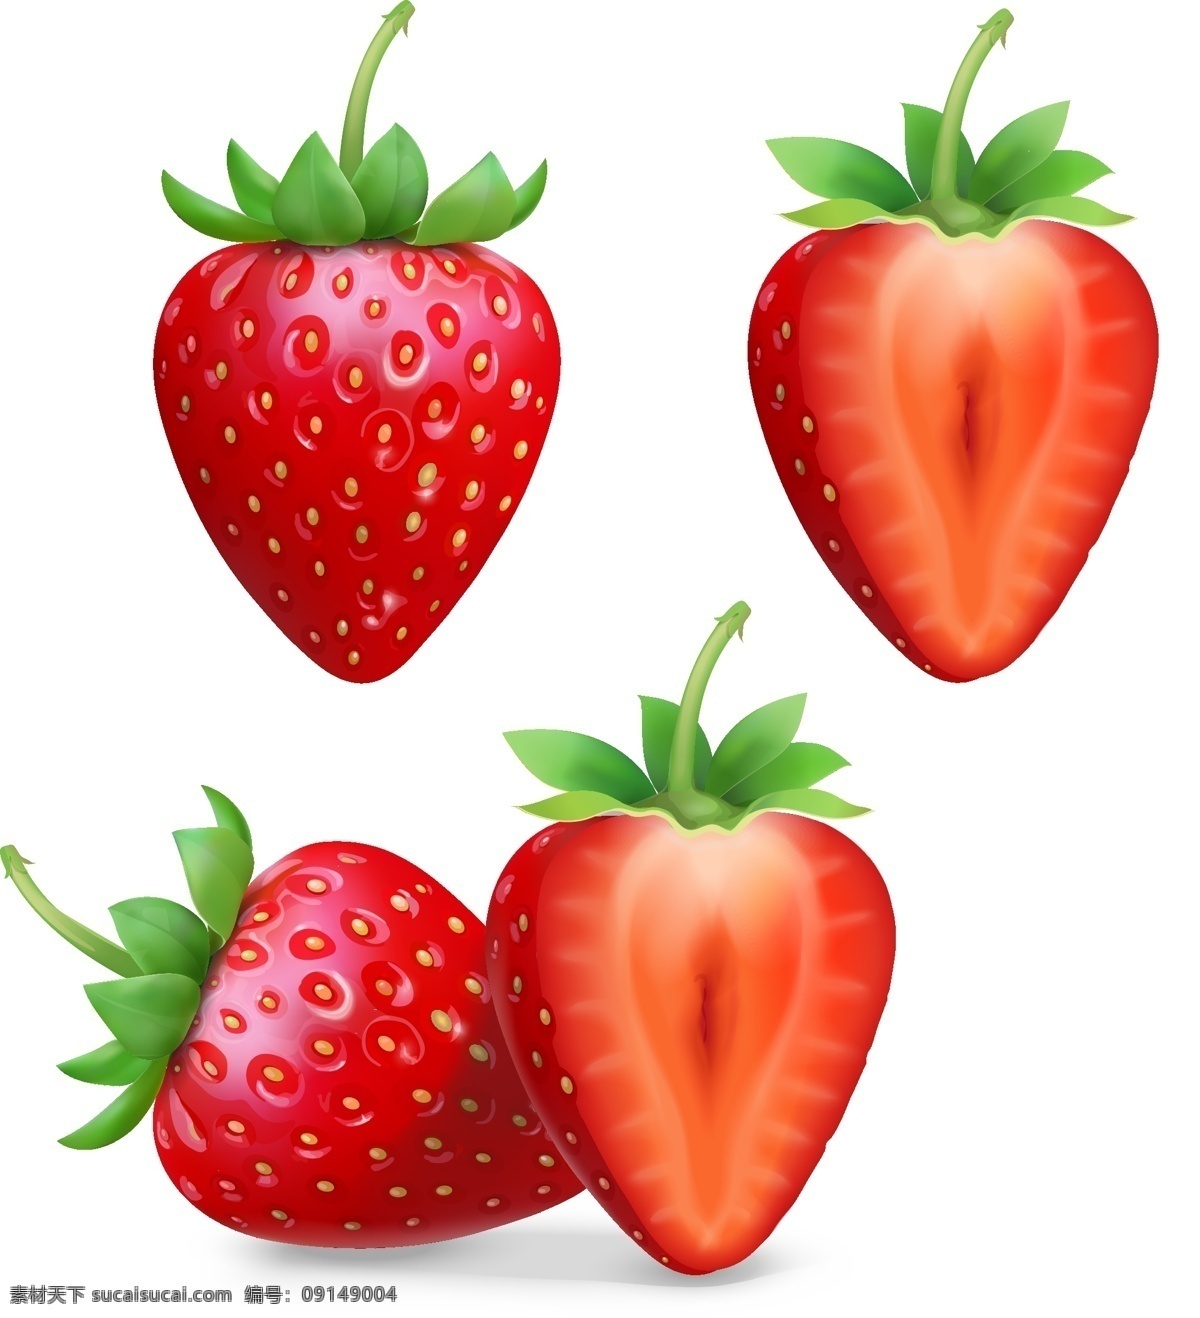 手绘草莓 写真草莓 矢量草莓 红草莓 草莓素材 水果 各类素材